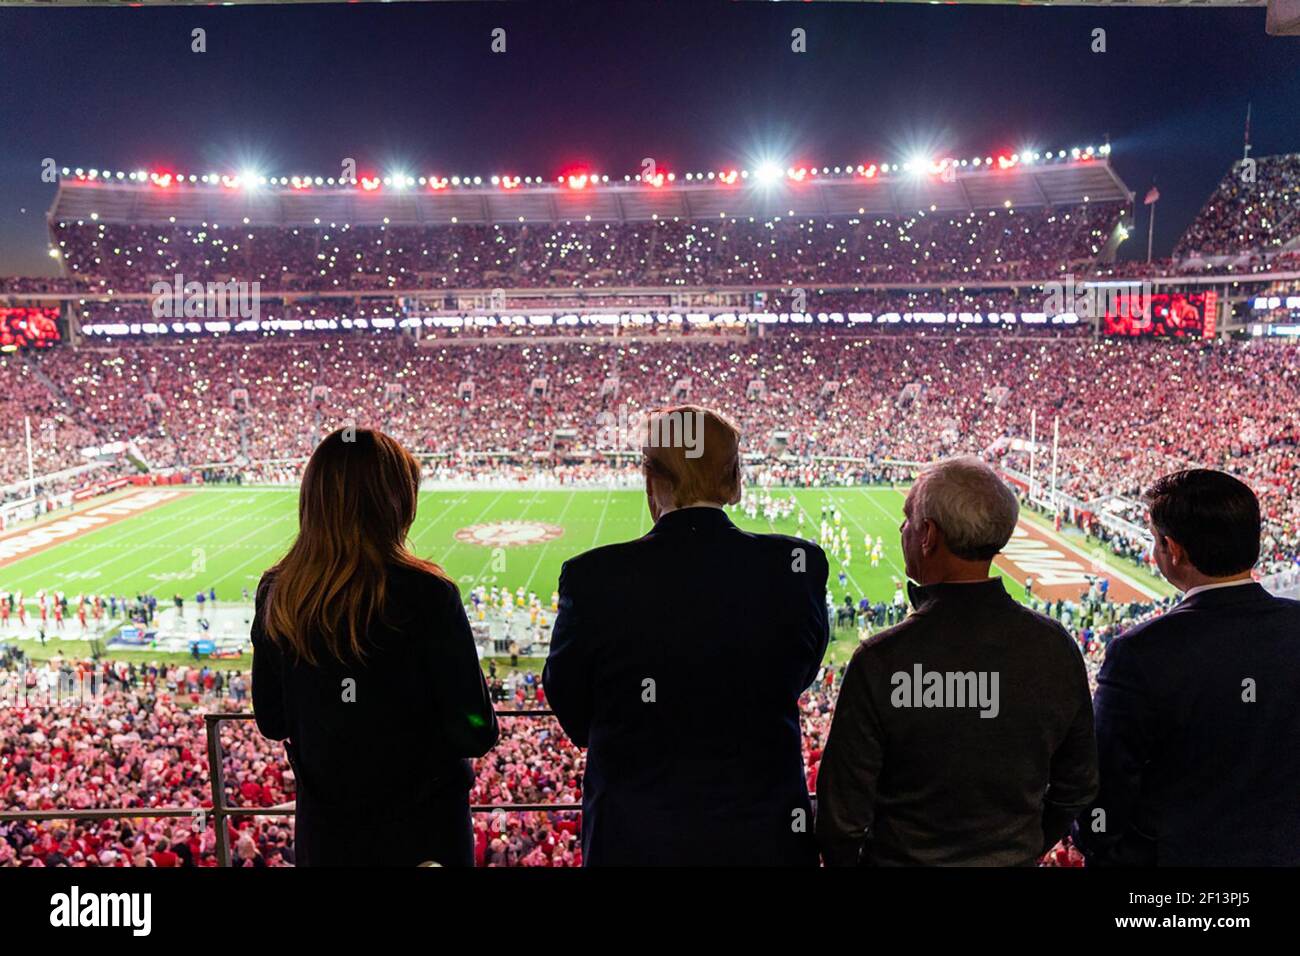 Le président Donald Trump et la première dame Melania Trump observent l'action sur le terrain au stade Bryant-Denny le samedi 9 2019 novembre, tout en assistant au match de football de l'Université d'Alabama-Louisiana State University à Tuscaloosa Ala Banque D'Images